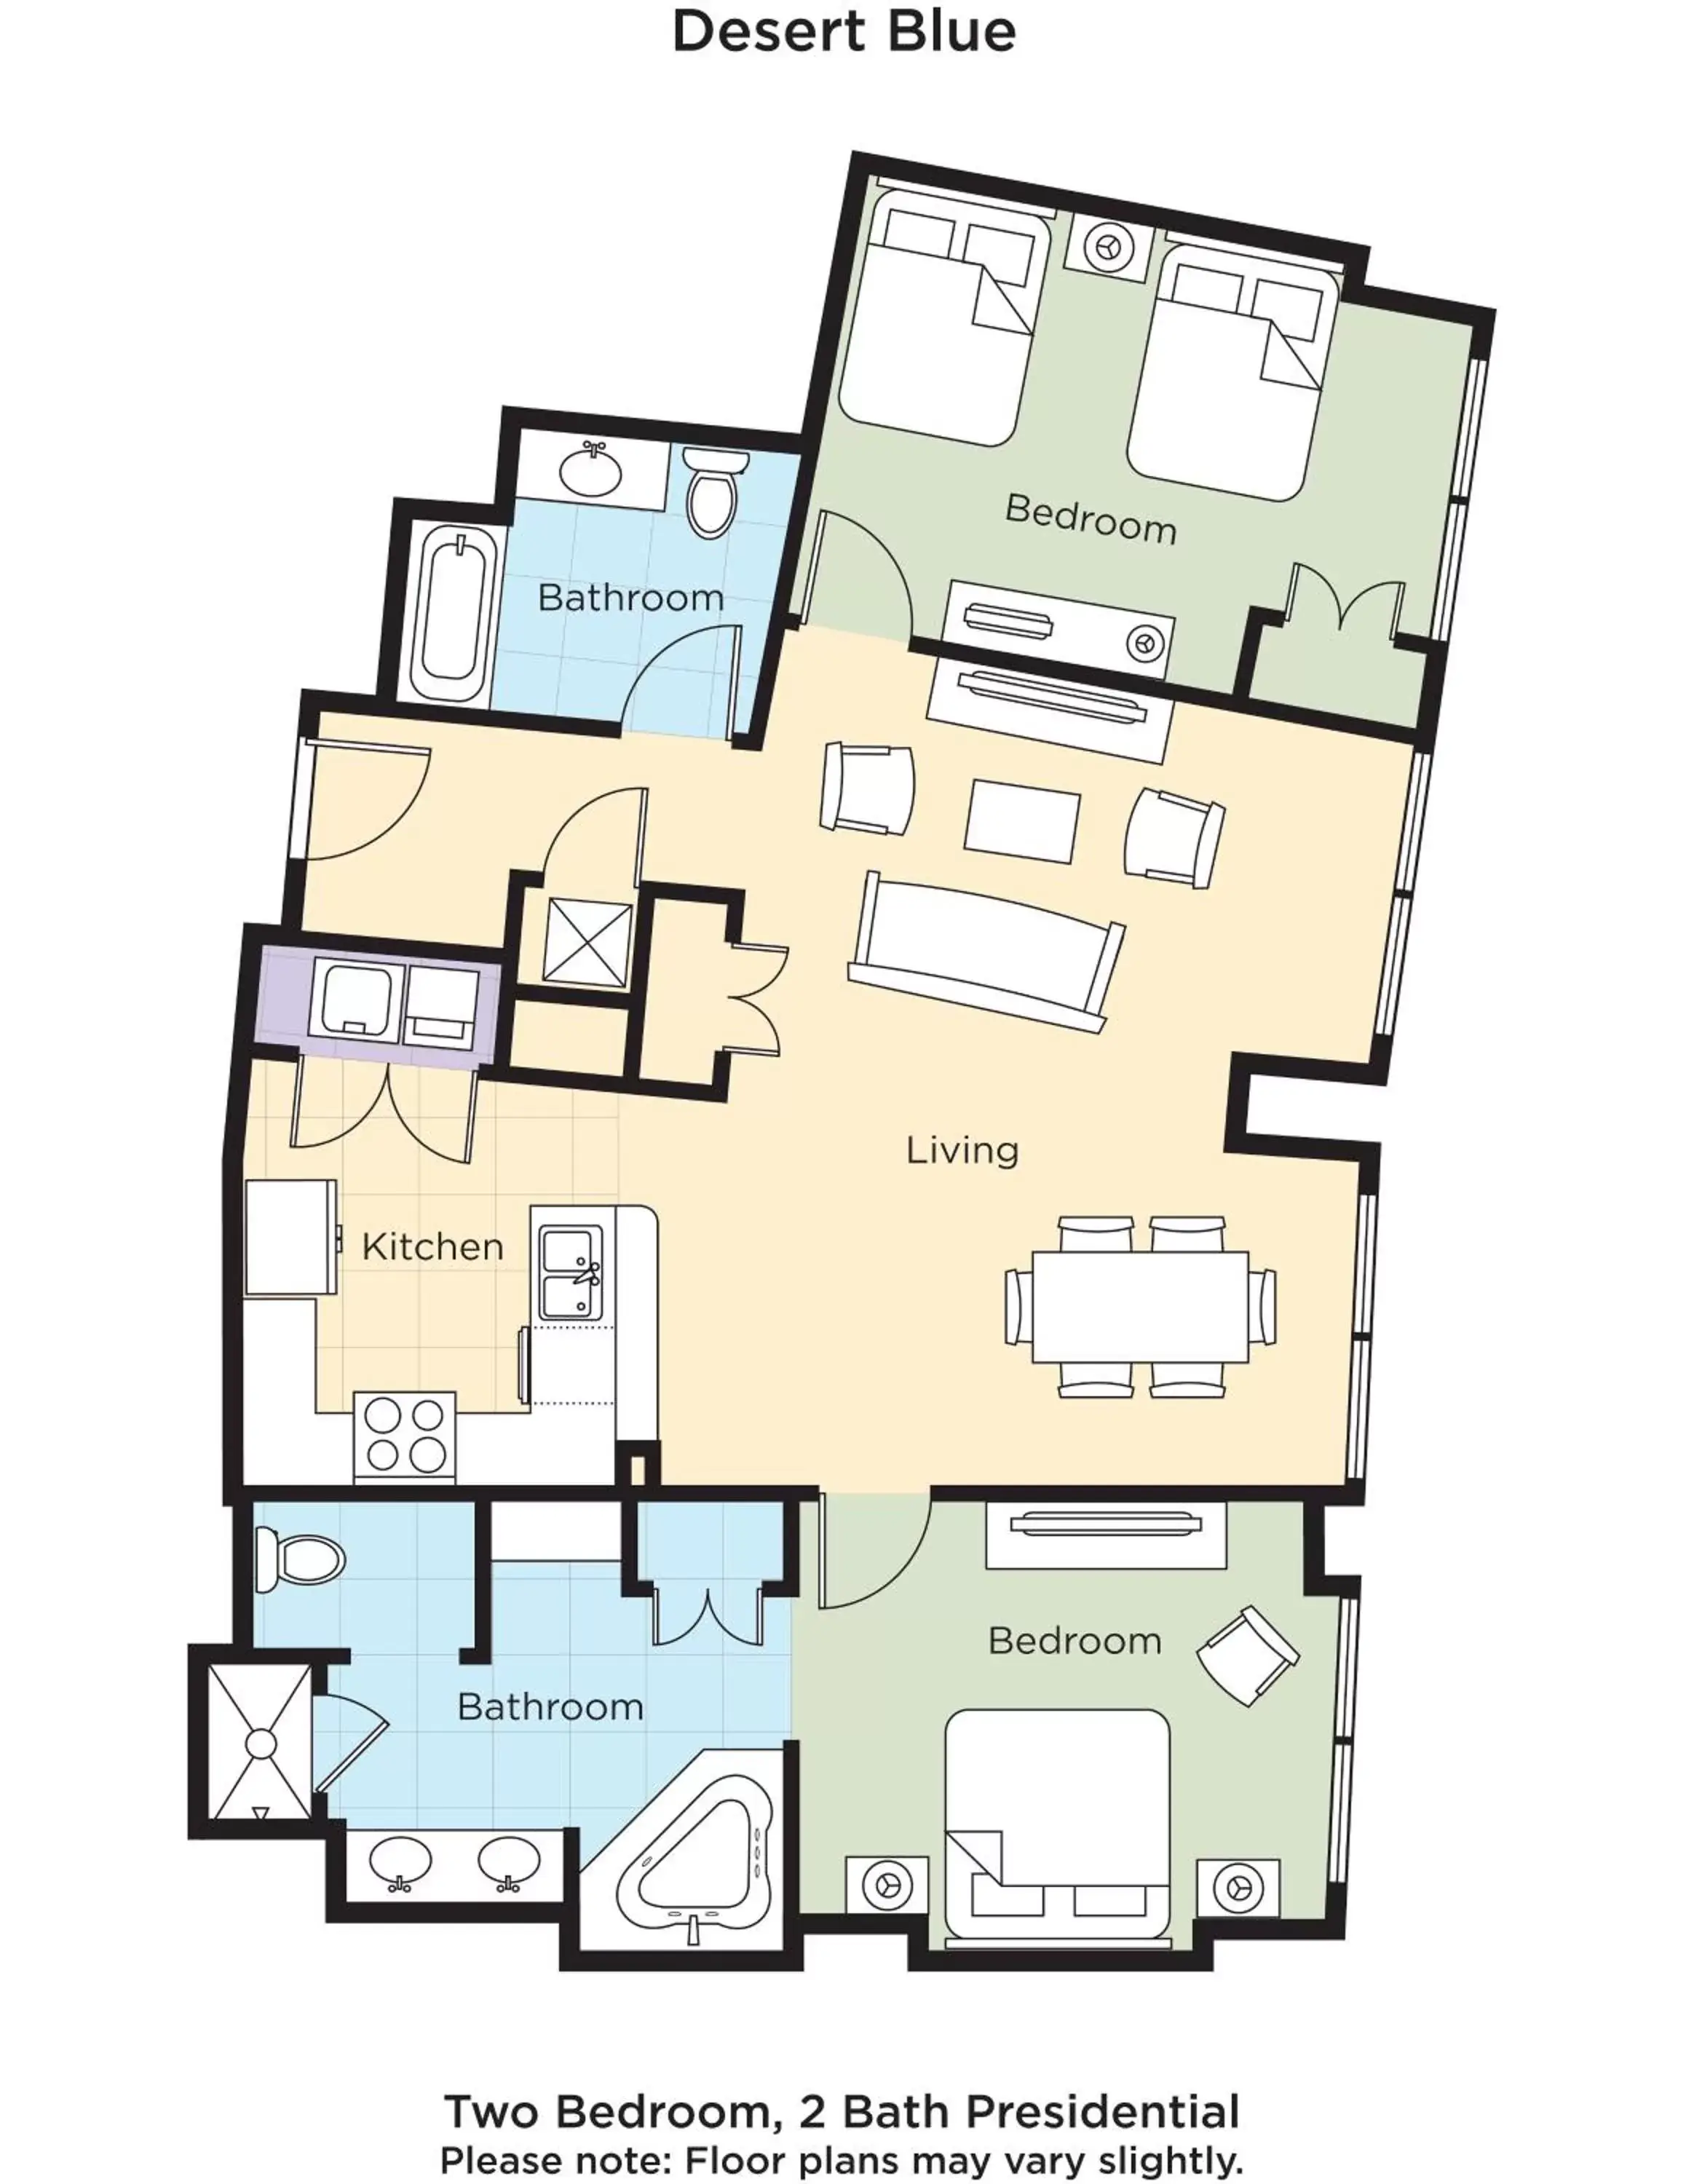 Floor Plan in Club Wyndham Desert Blue